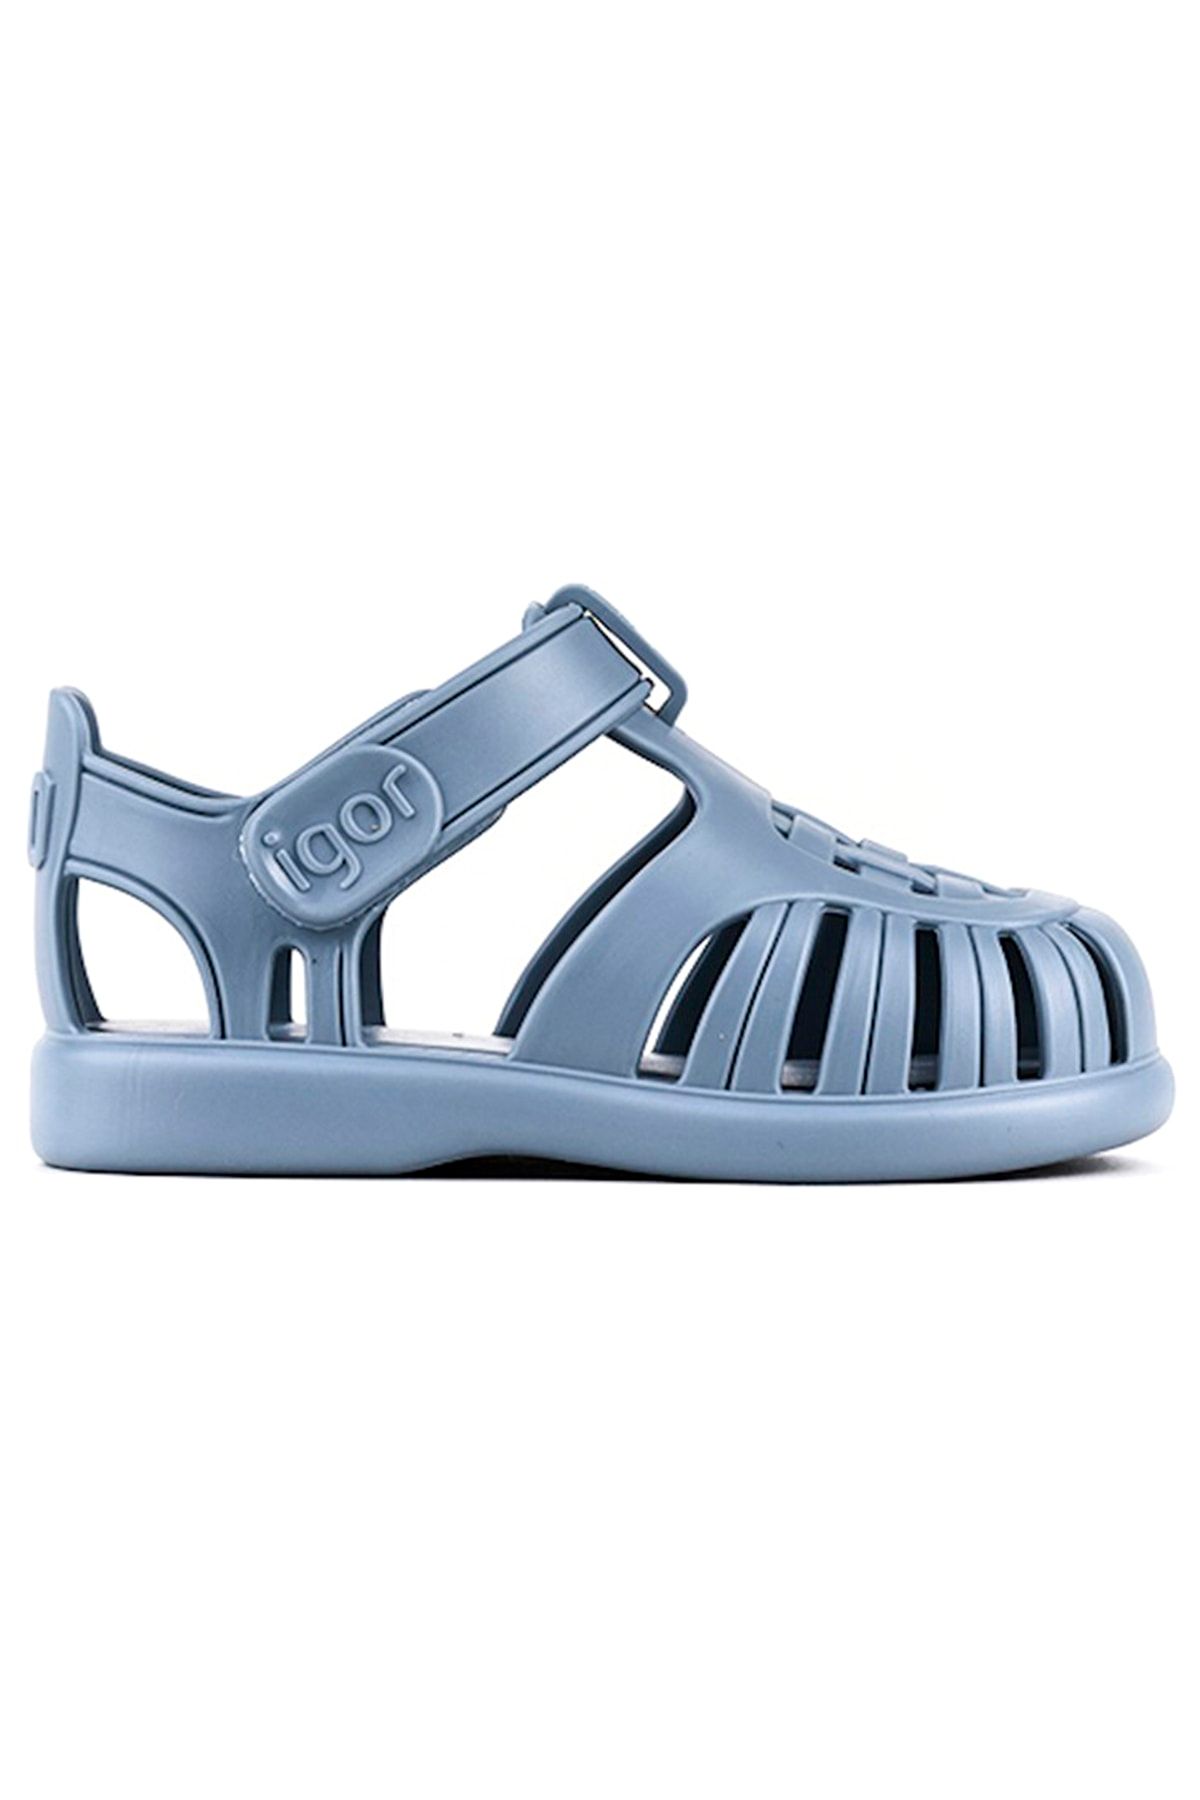 IGOR Tobby Solid Çocuk Gri Günlük Stil Sandalet S10271-225